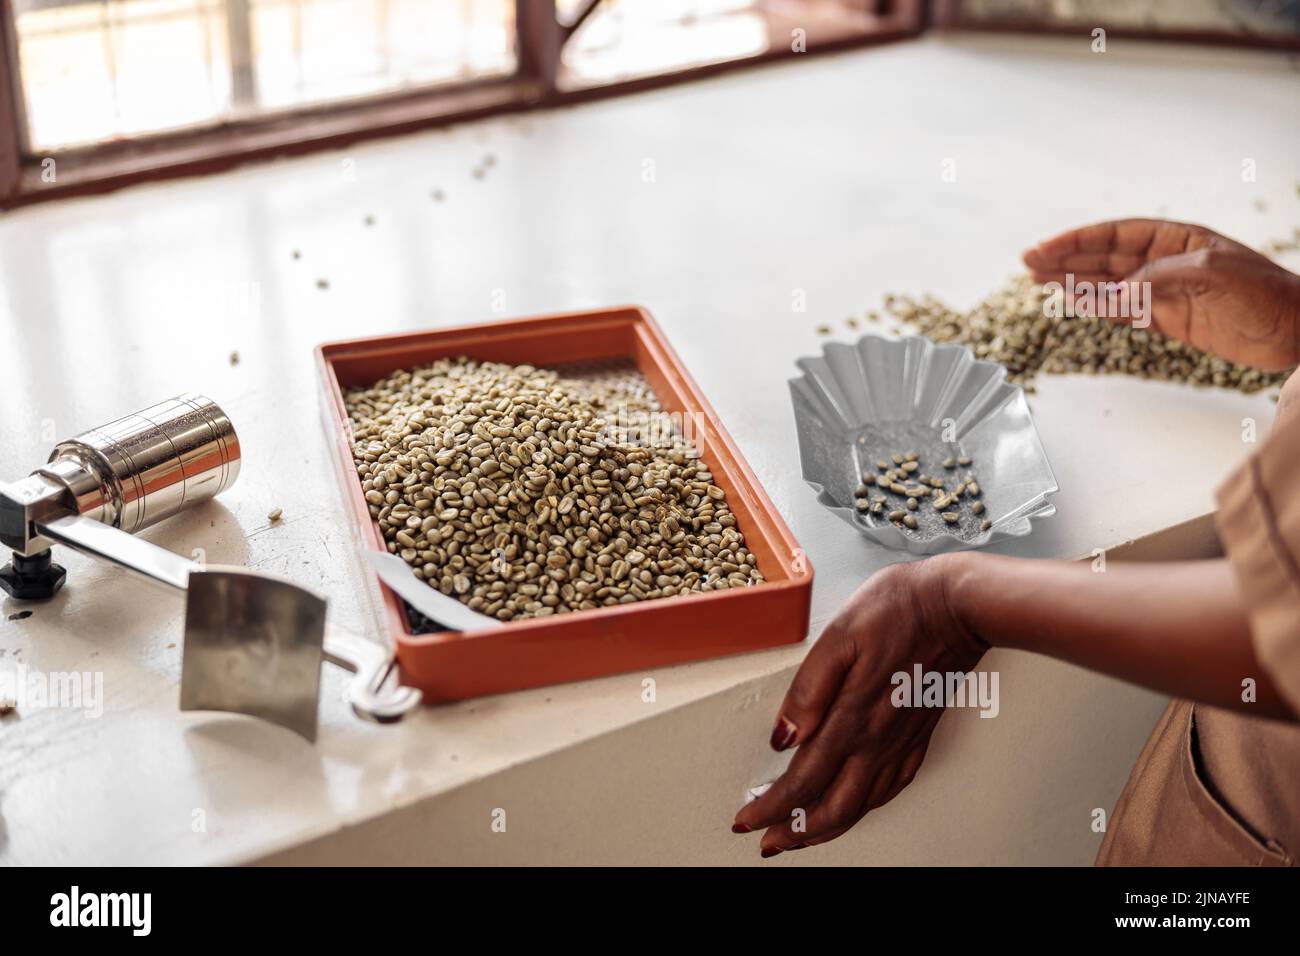 Une femme triant les grains de café par taille à l'aide d'un tamis Banque D'Images